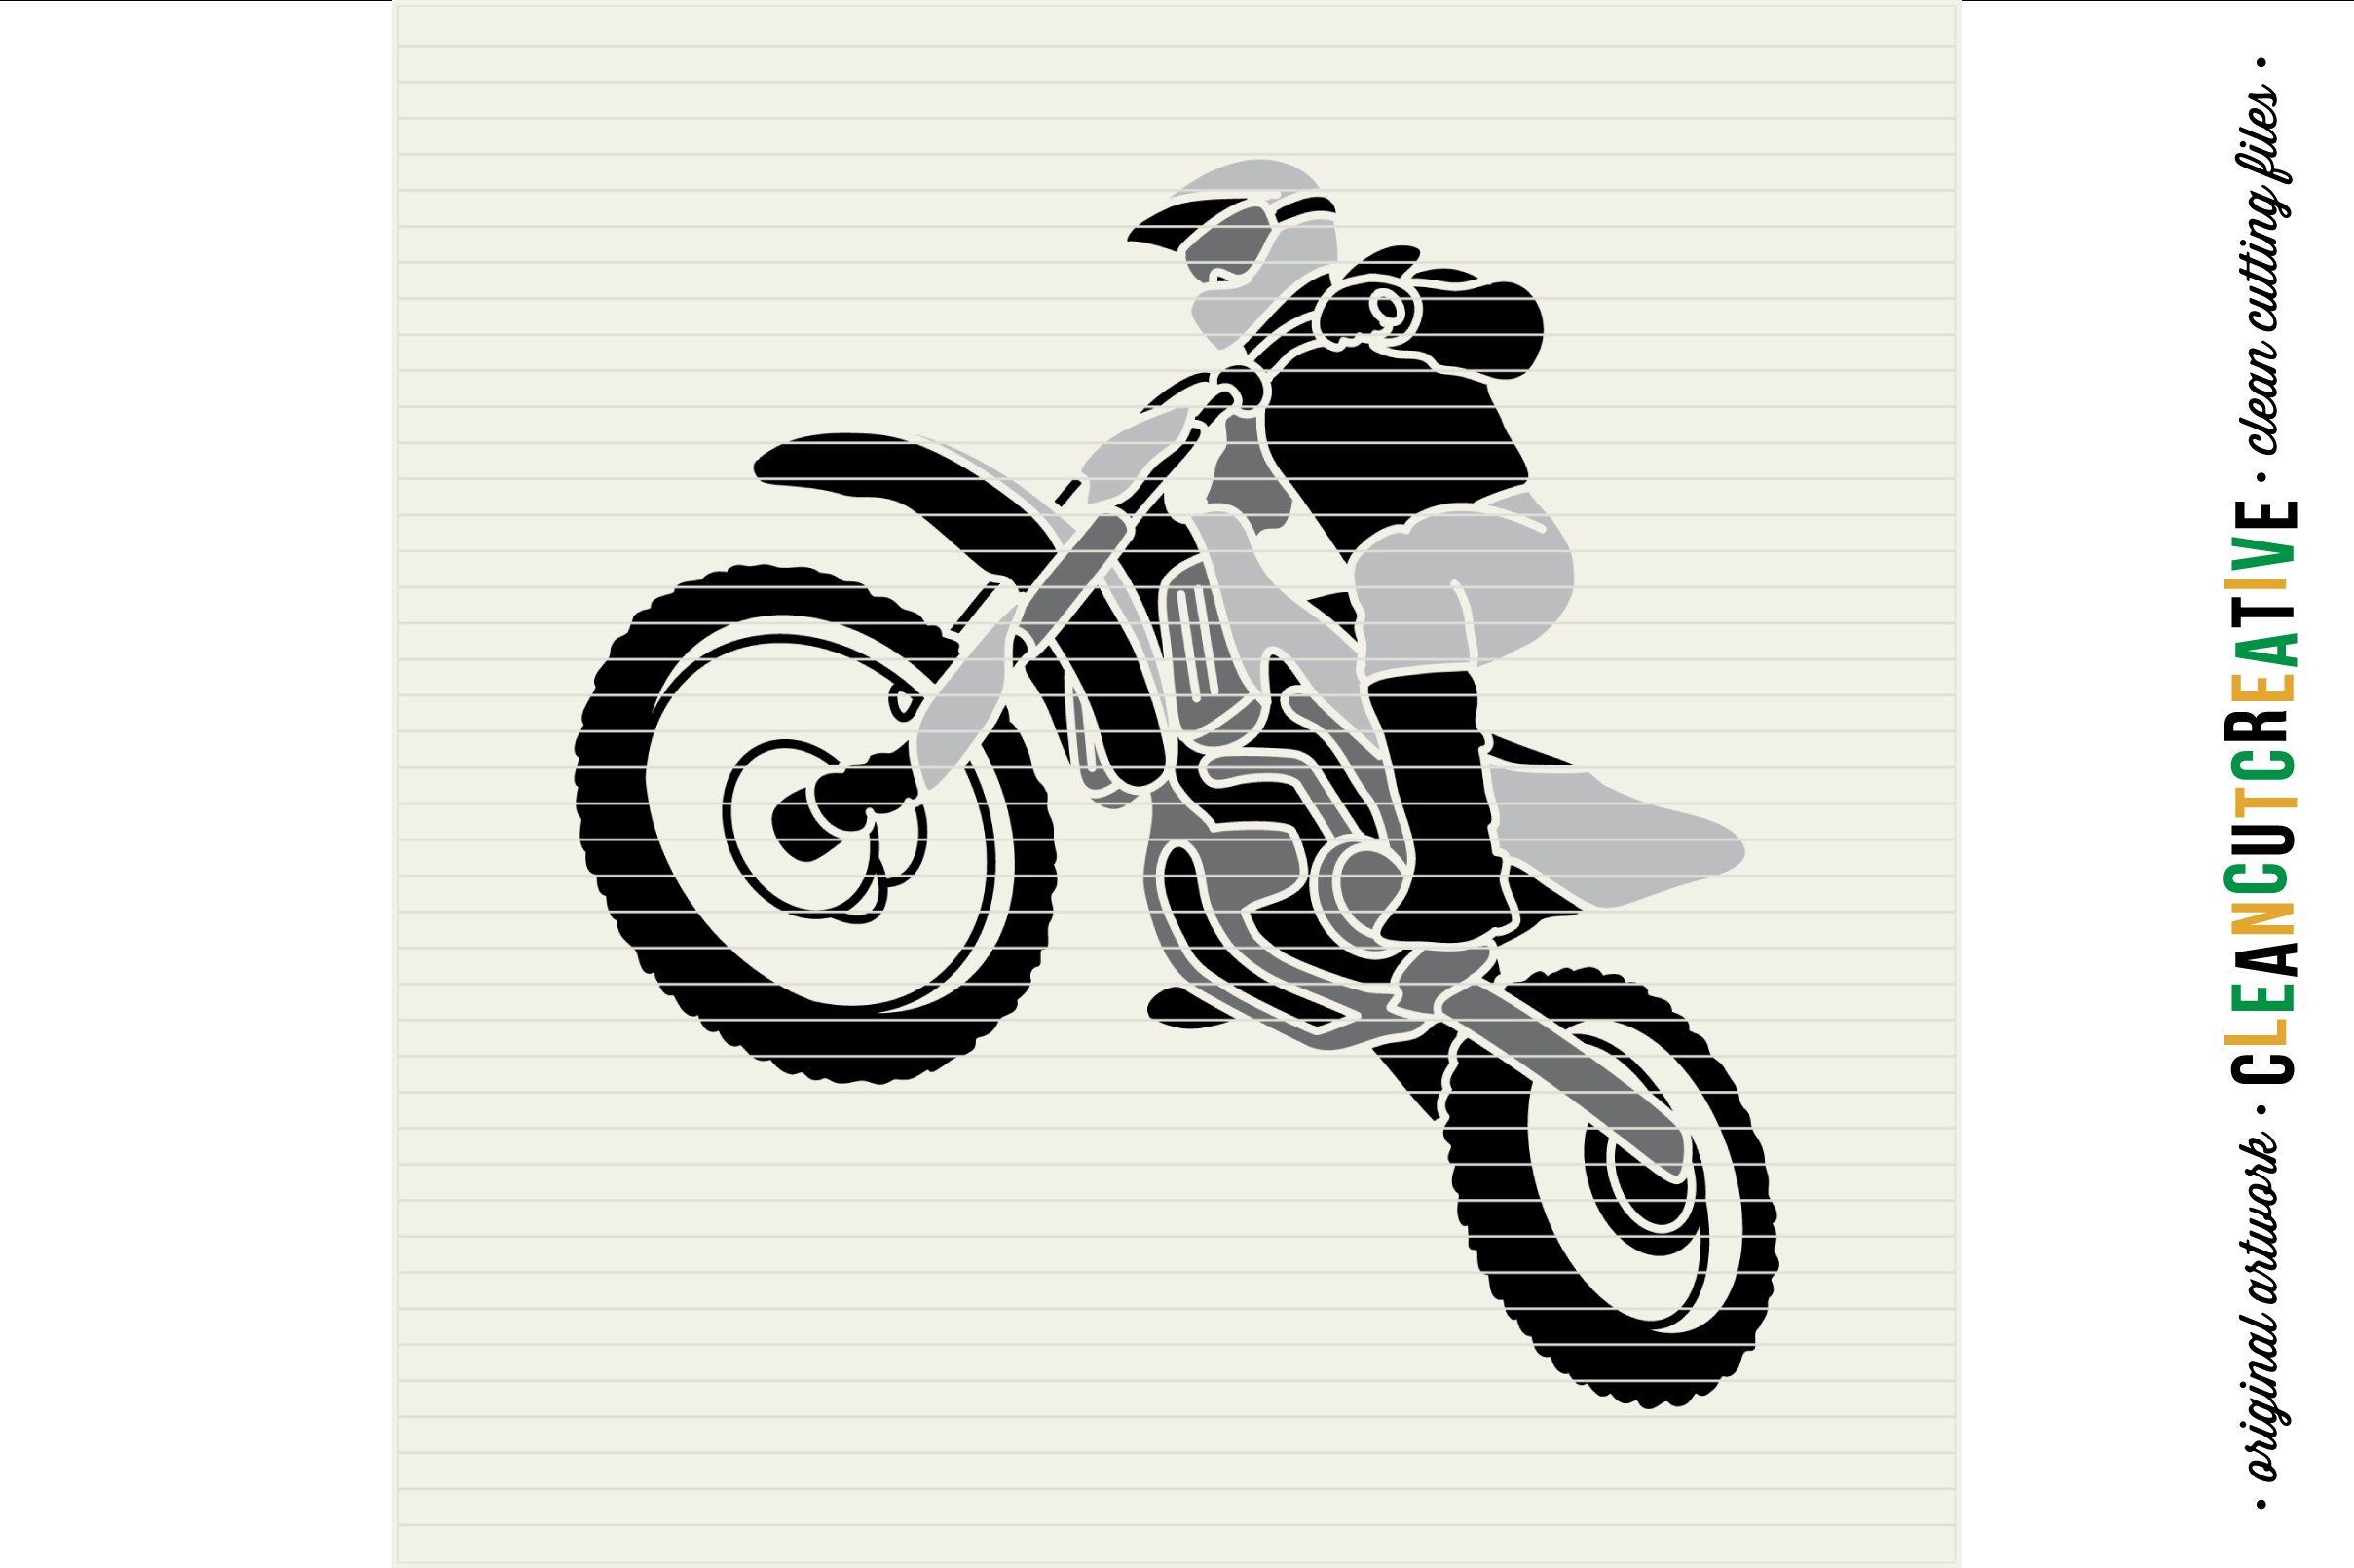 Moto stuntman in flight on moto print.